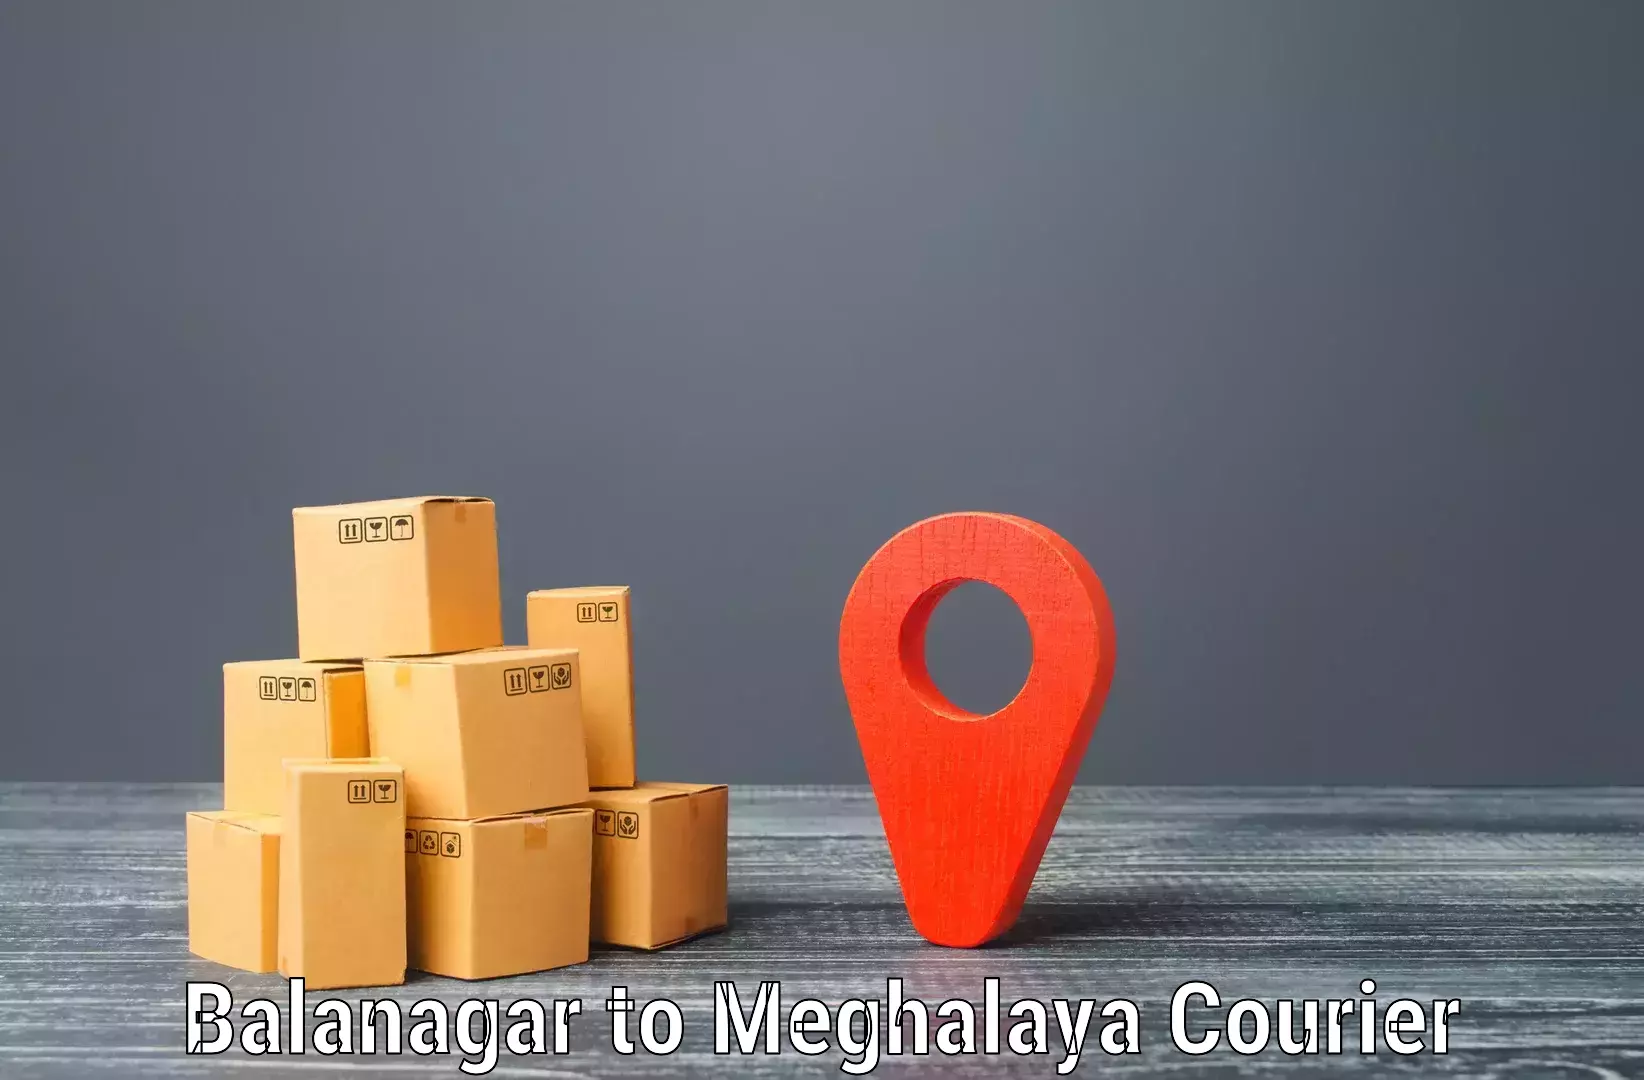 Express logistics service Balanagar to Meghalaya